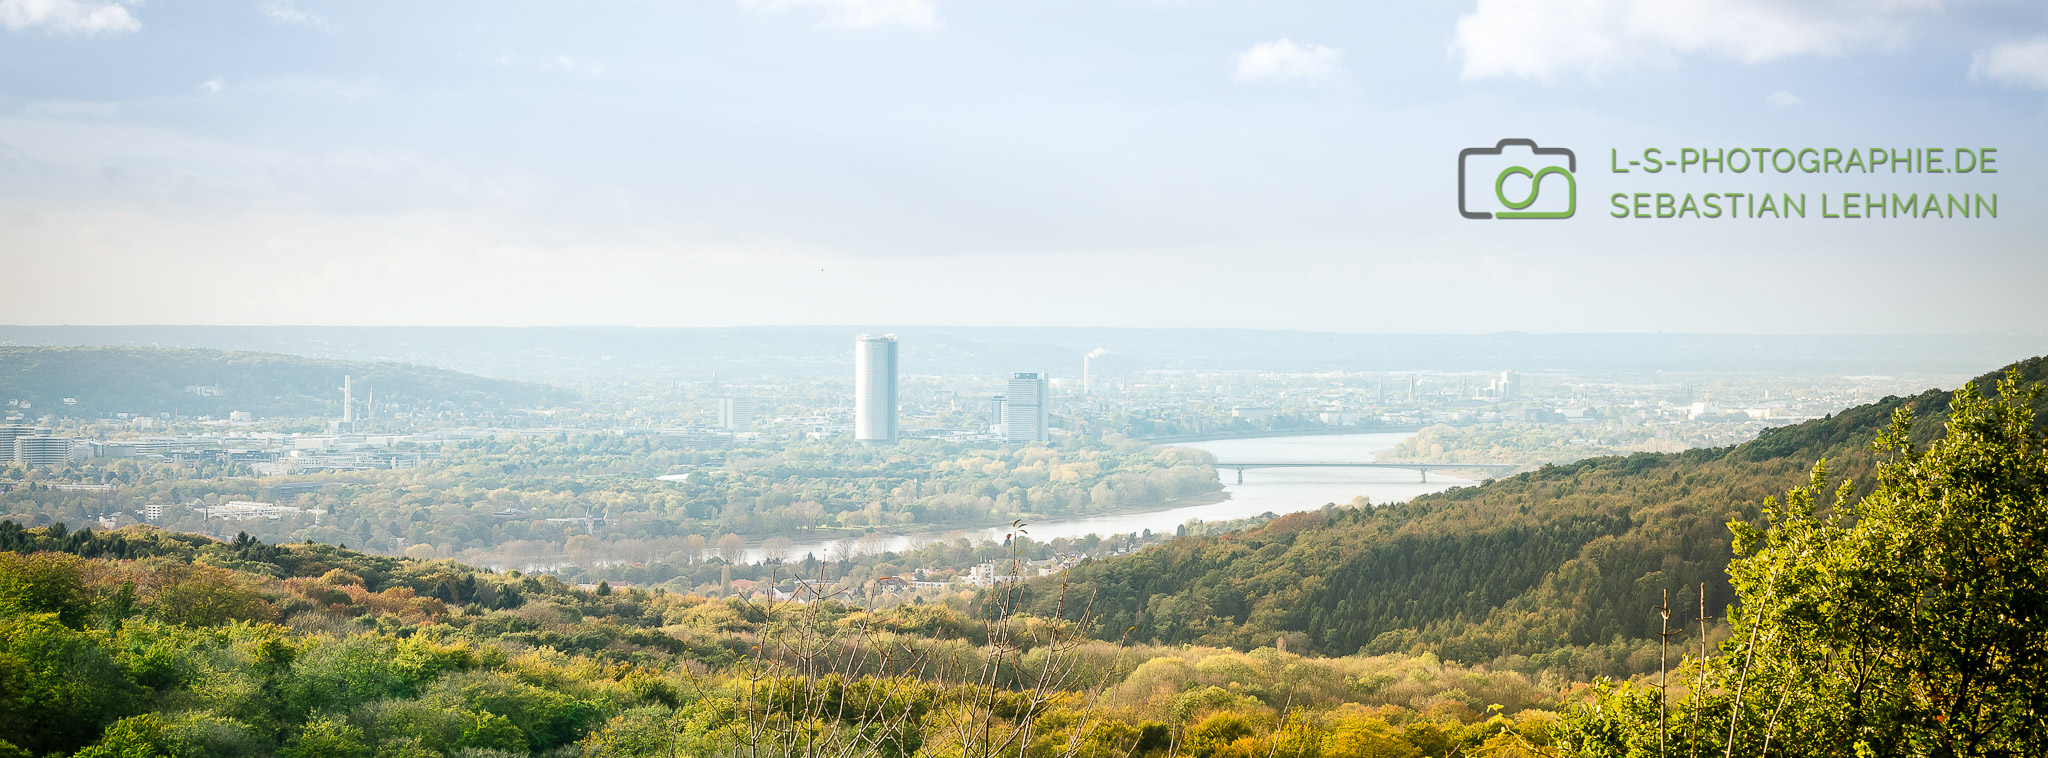 Blick über den Rhein auf Bonn vom Stenzelberg im Siebengebirge in Königswinter aus gesehen. LS Photographie Dueren